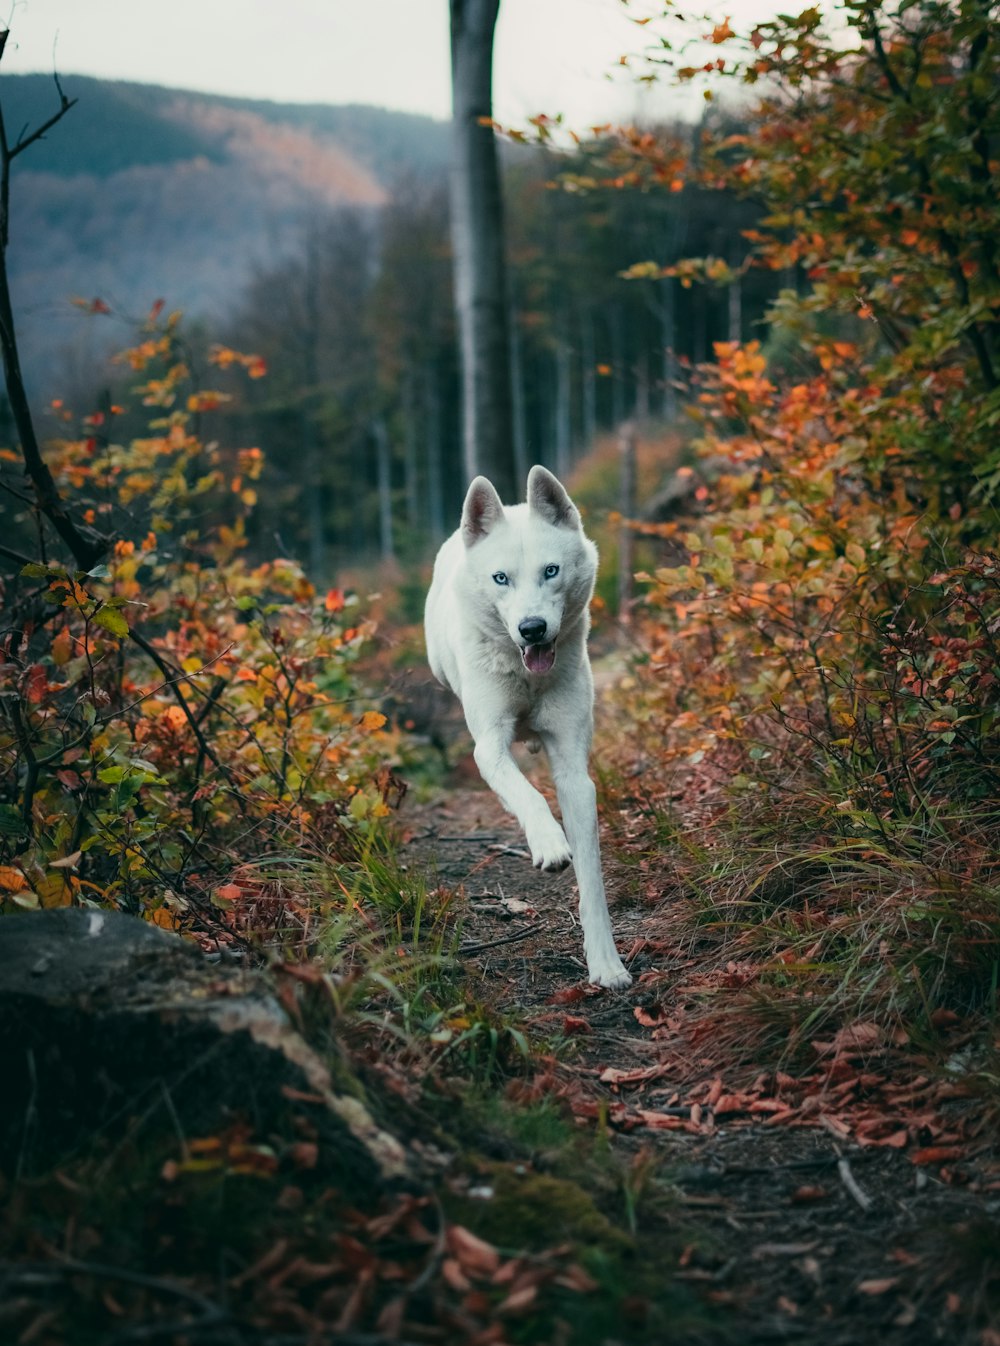 lupo bianco che corre vicino a piante e alberi verdi